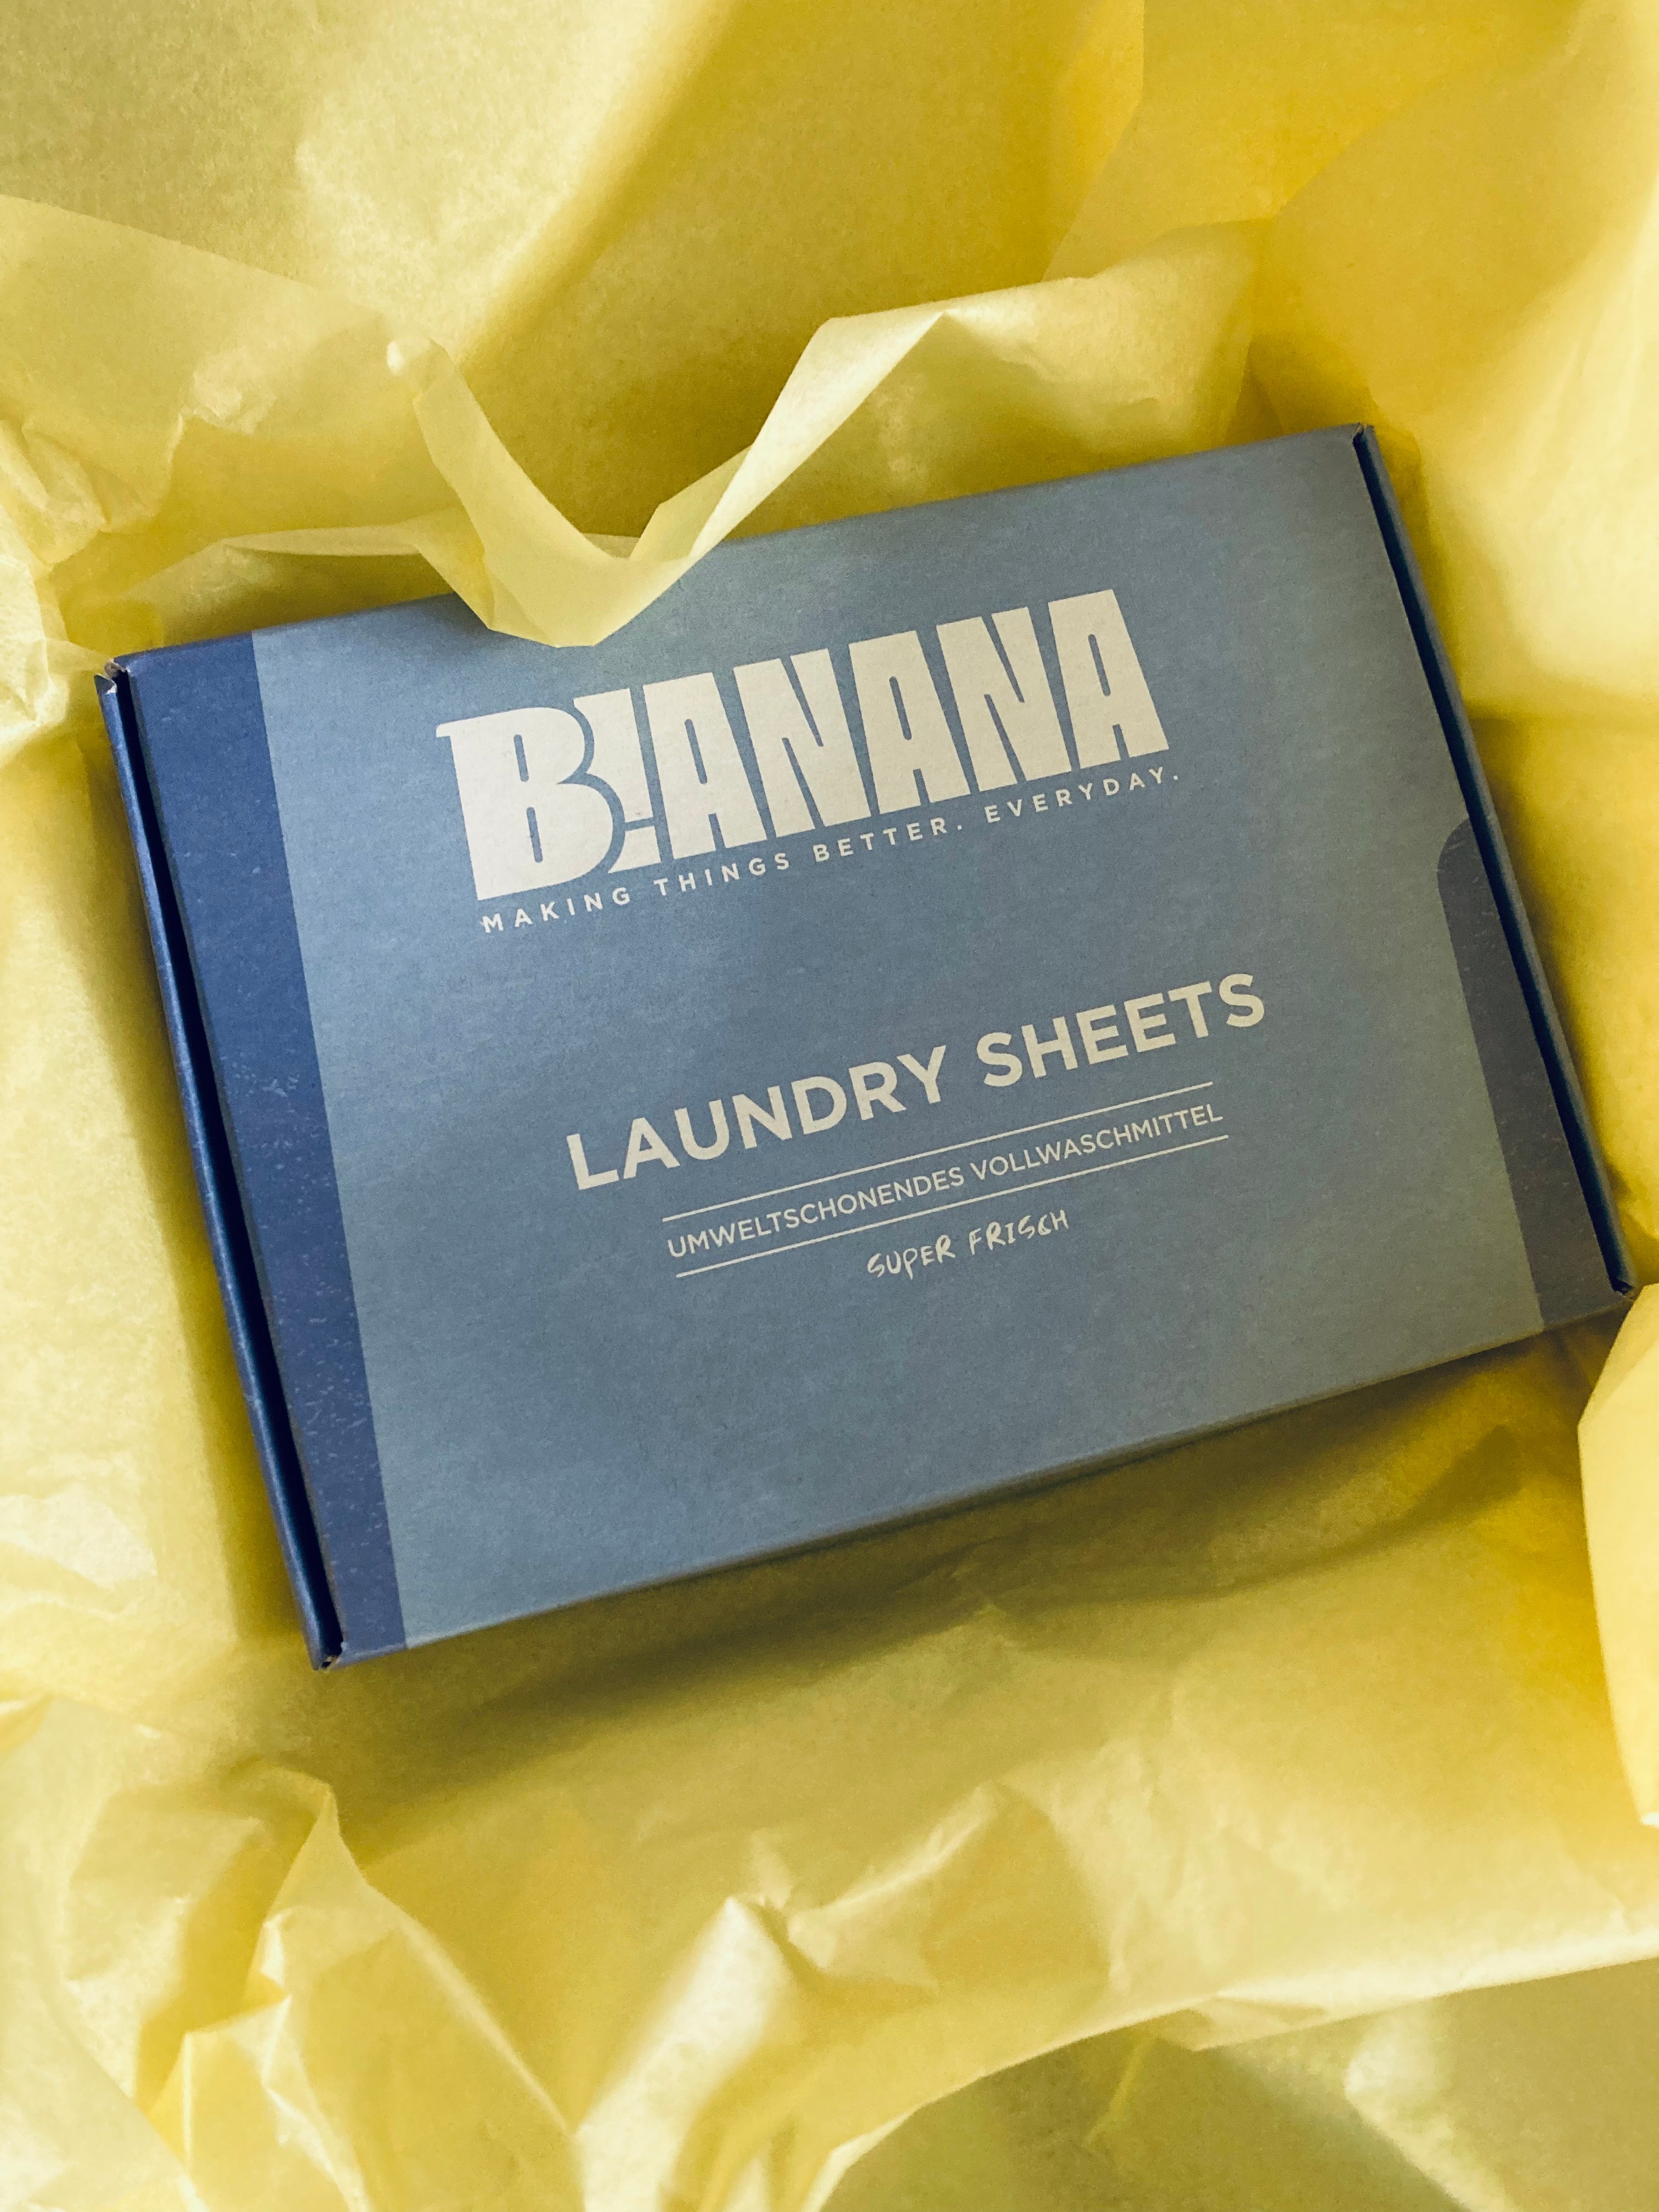 Laundry Sheets Super frisch auf gelben Seidenpapier